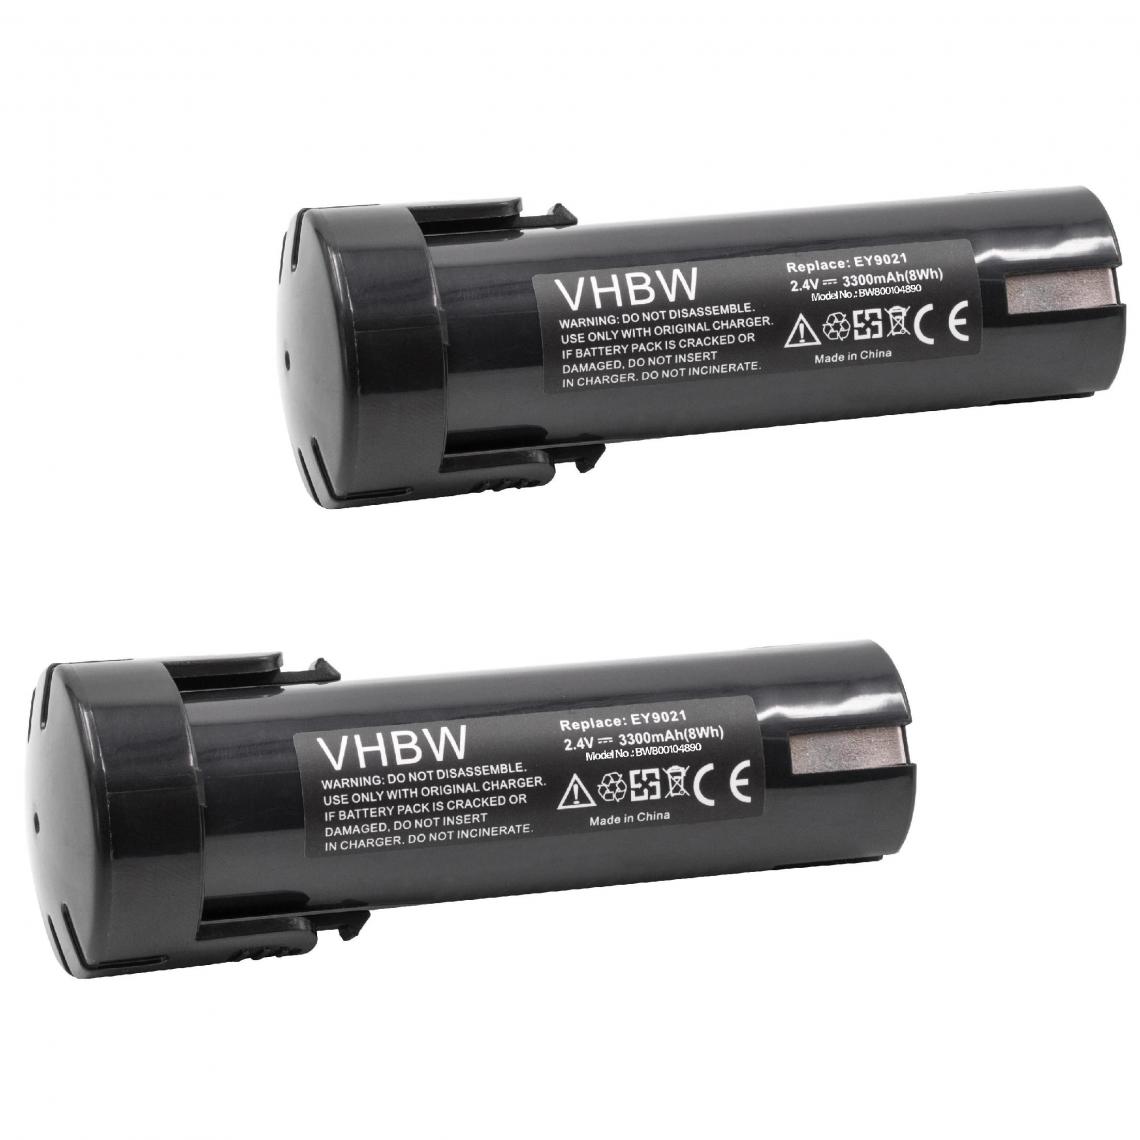 Vhbw - vhbw 2x Batterie remplacement pour Panasonic 6538 1, 6539 6, 6540 1, 6545 6, 6546 6, 6547 1, 6550 20 pour outil électrique (3300mAh NiMH 2,4V) - Clouterie